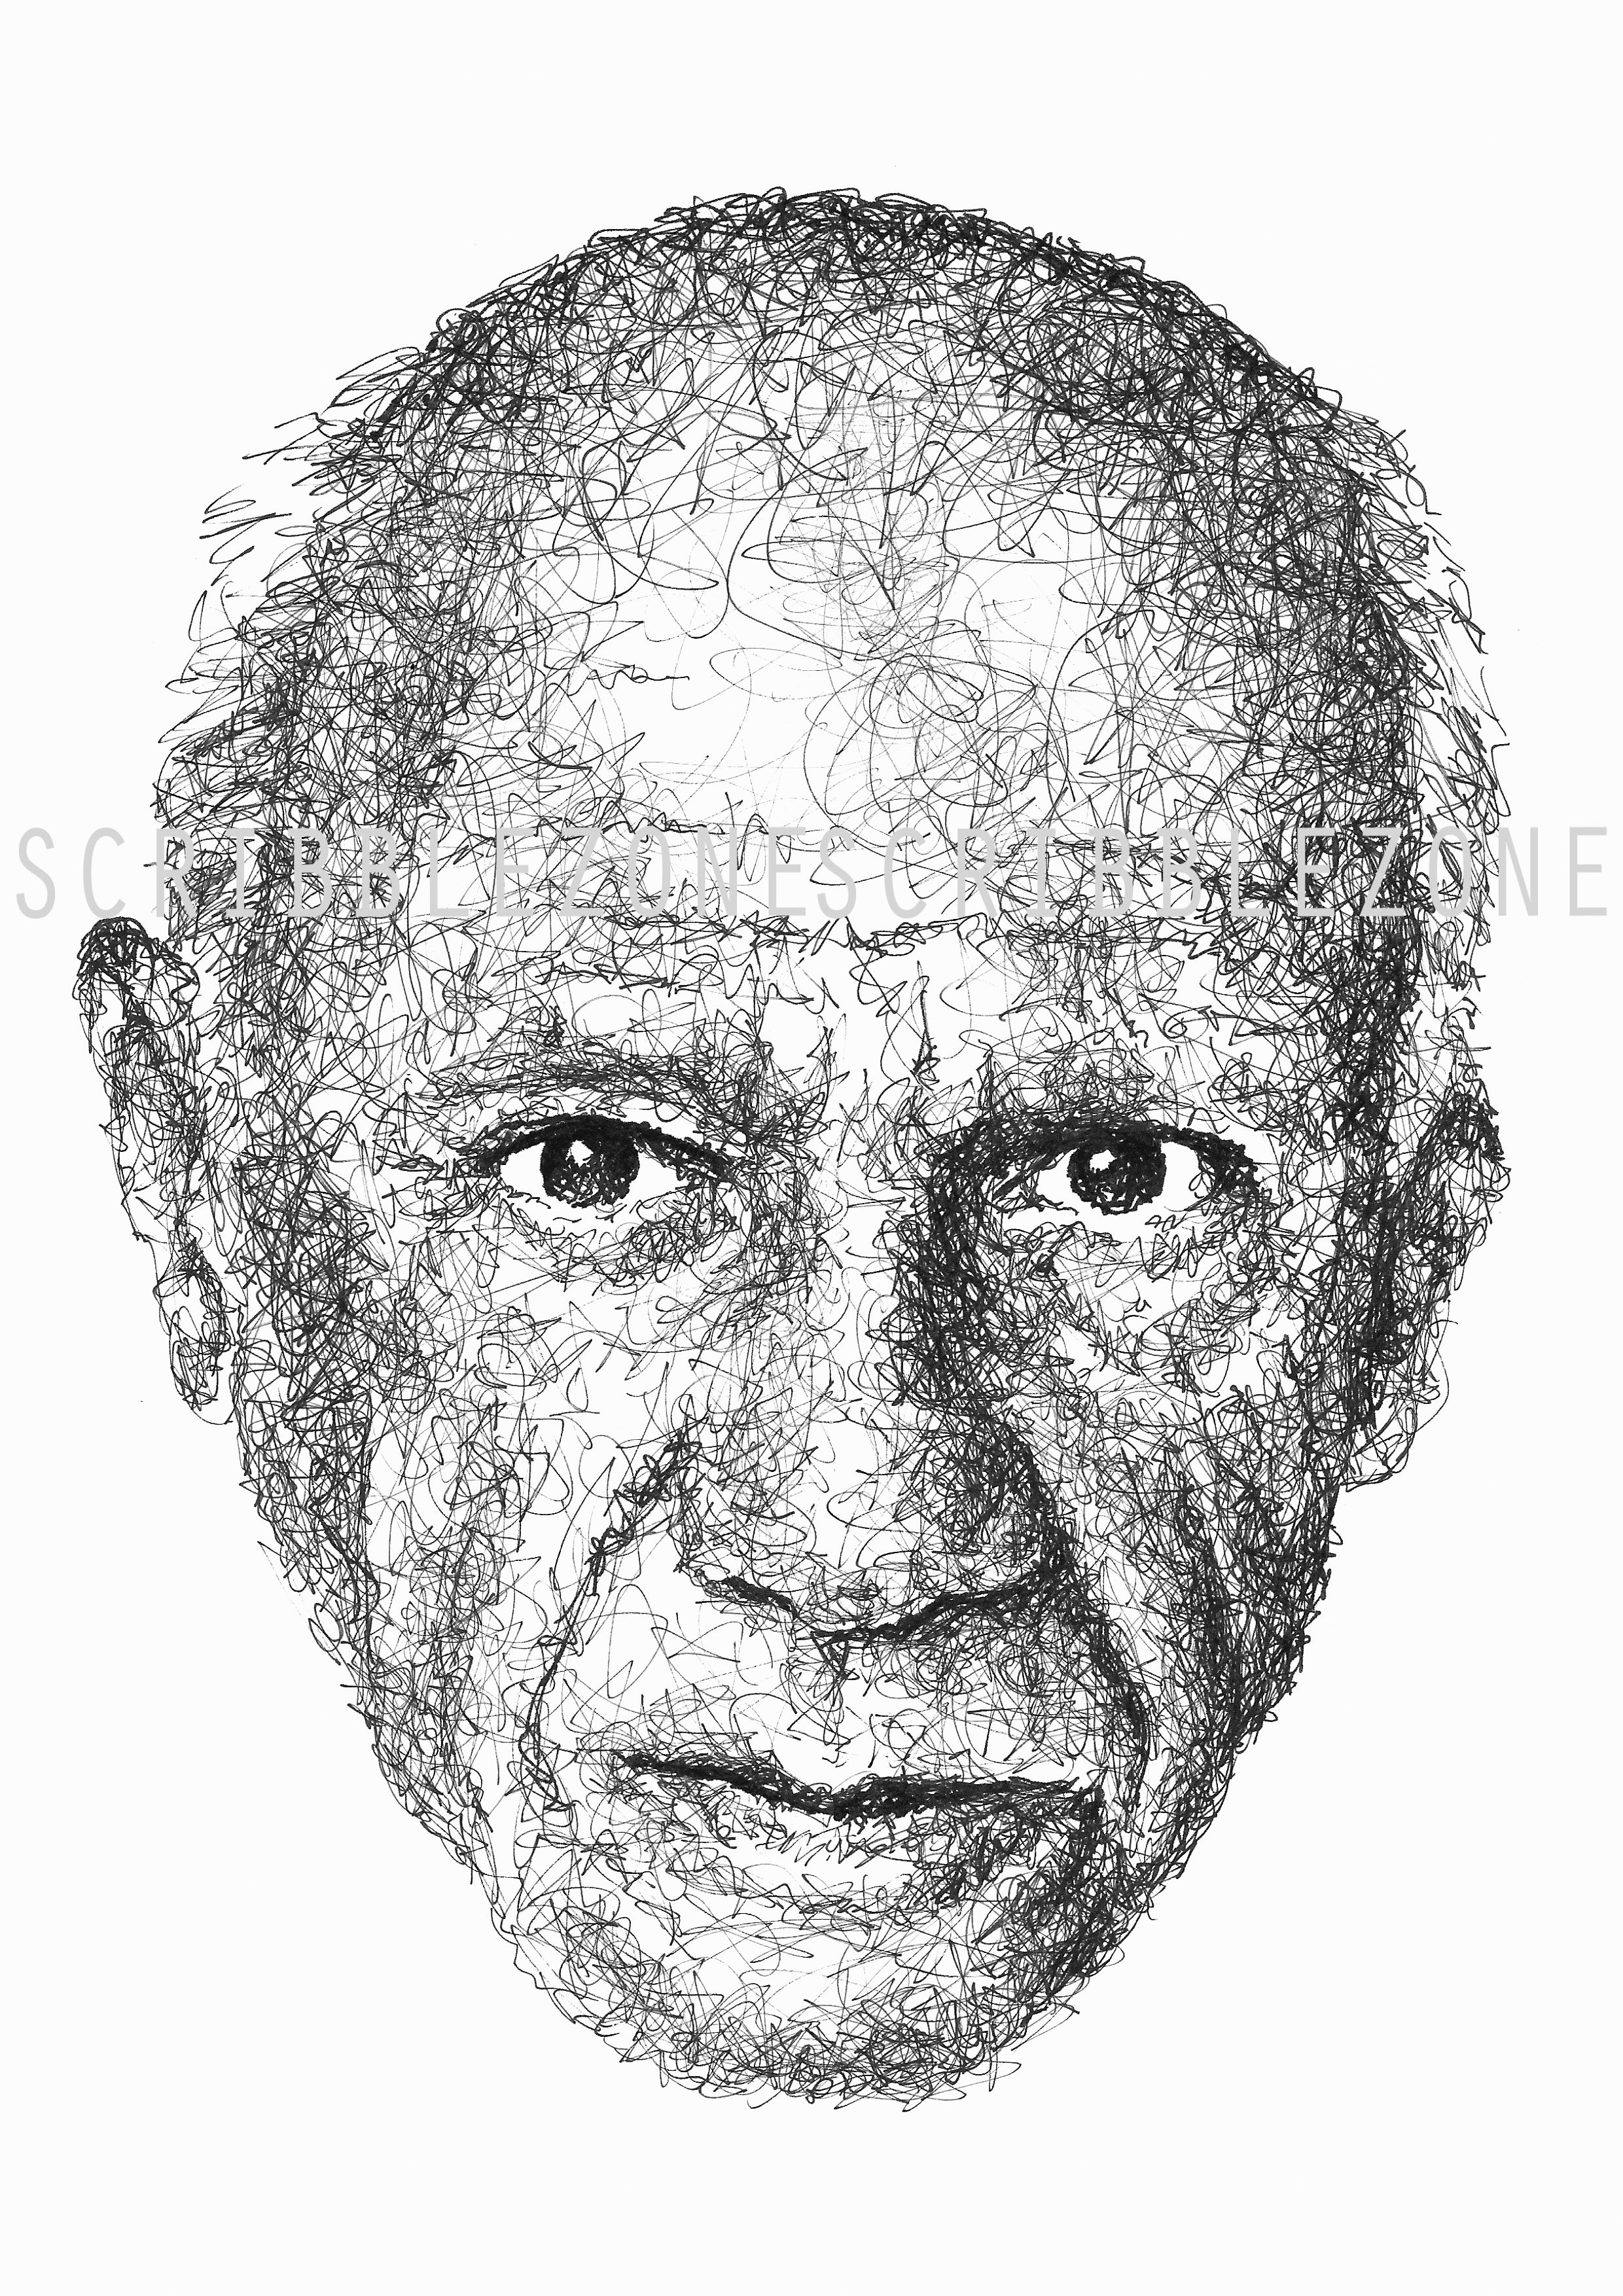 Pablo Picasso Portrait der Künstlerin Marilena Hamm alias Scribblezone, im unversechselbaren Scribble-Stil gezeichnet, mit Wasserzeichen.